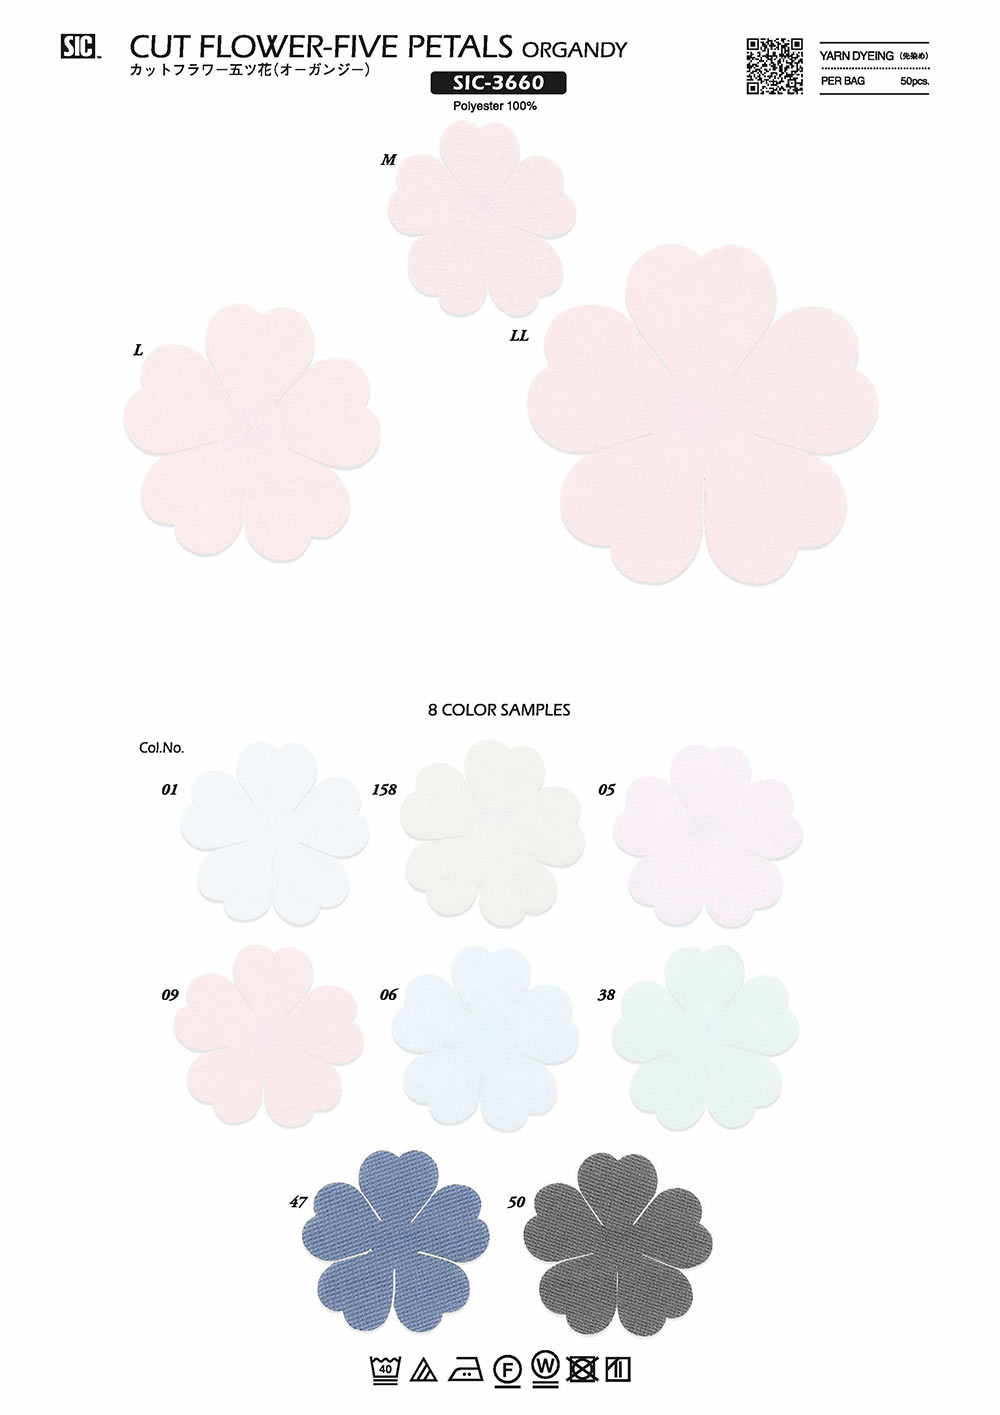 SIC-3660 Schnittblume Fünf Blumen (Organy)[Verschiedene Waren Und Andere] SHINDO(SIC)